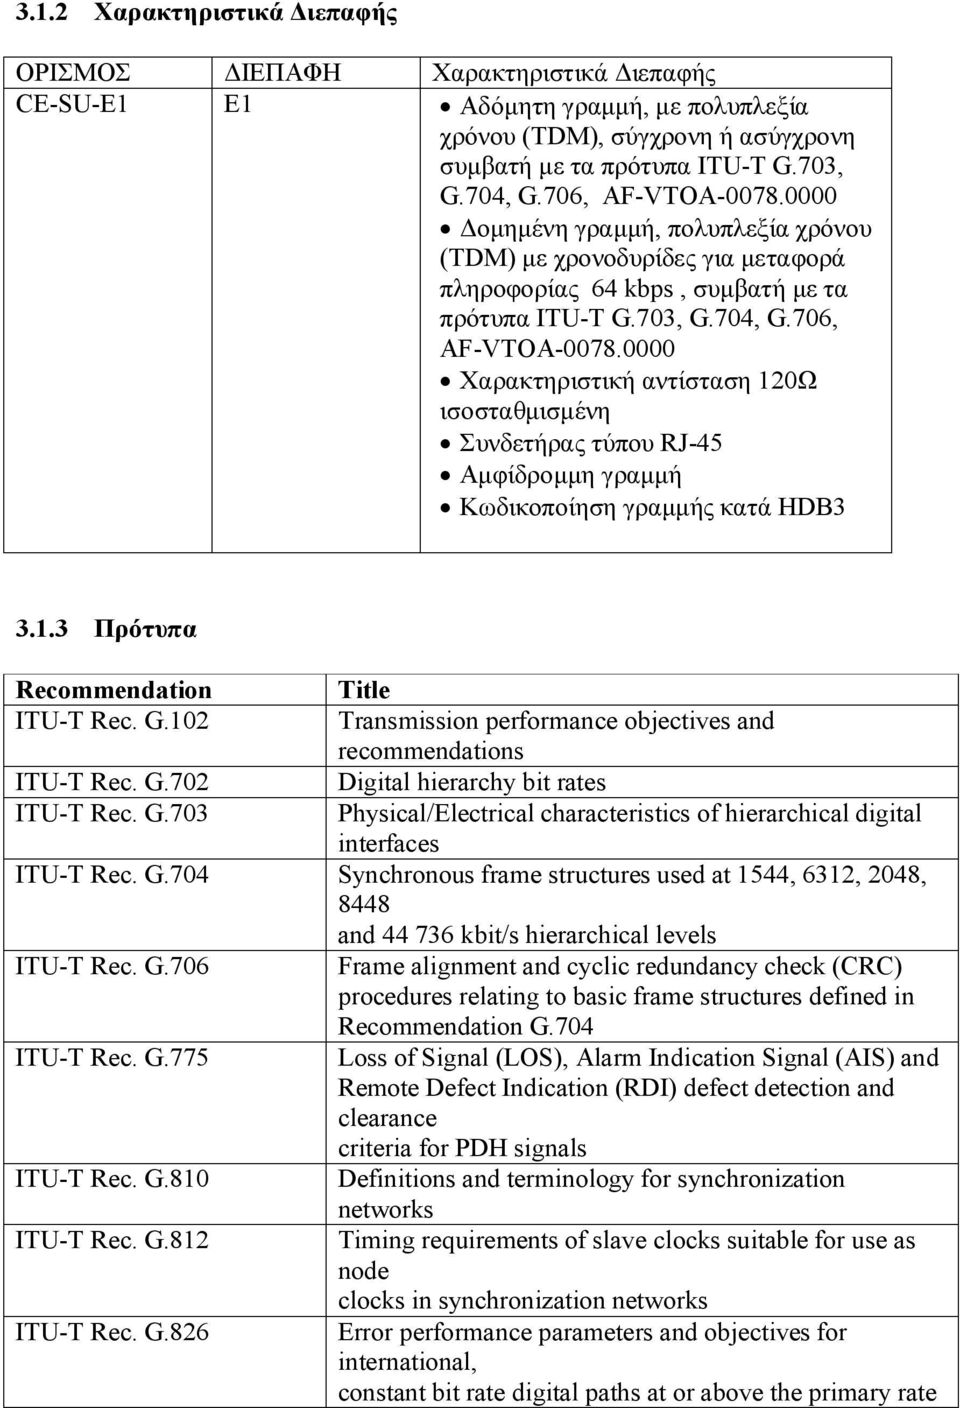 1.3 Πρότυπα Recommendation ITU-T Rec. G.